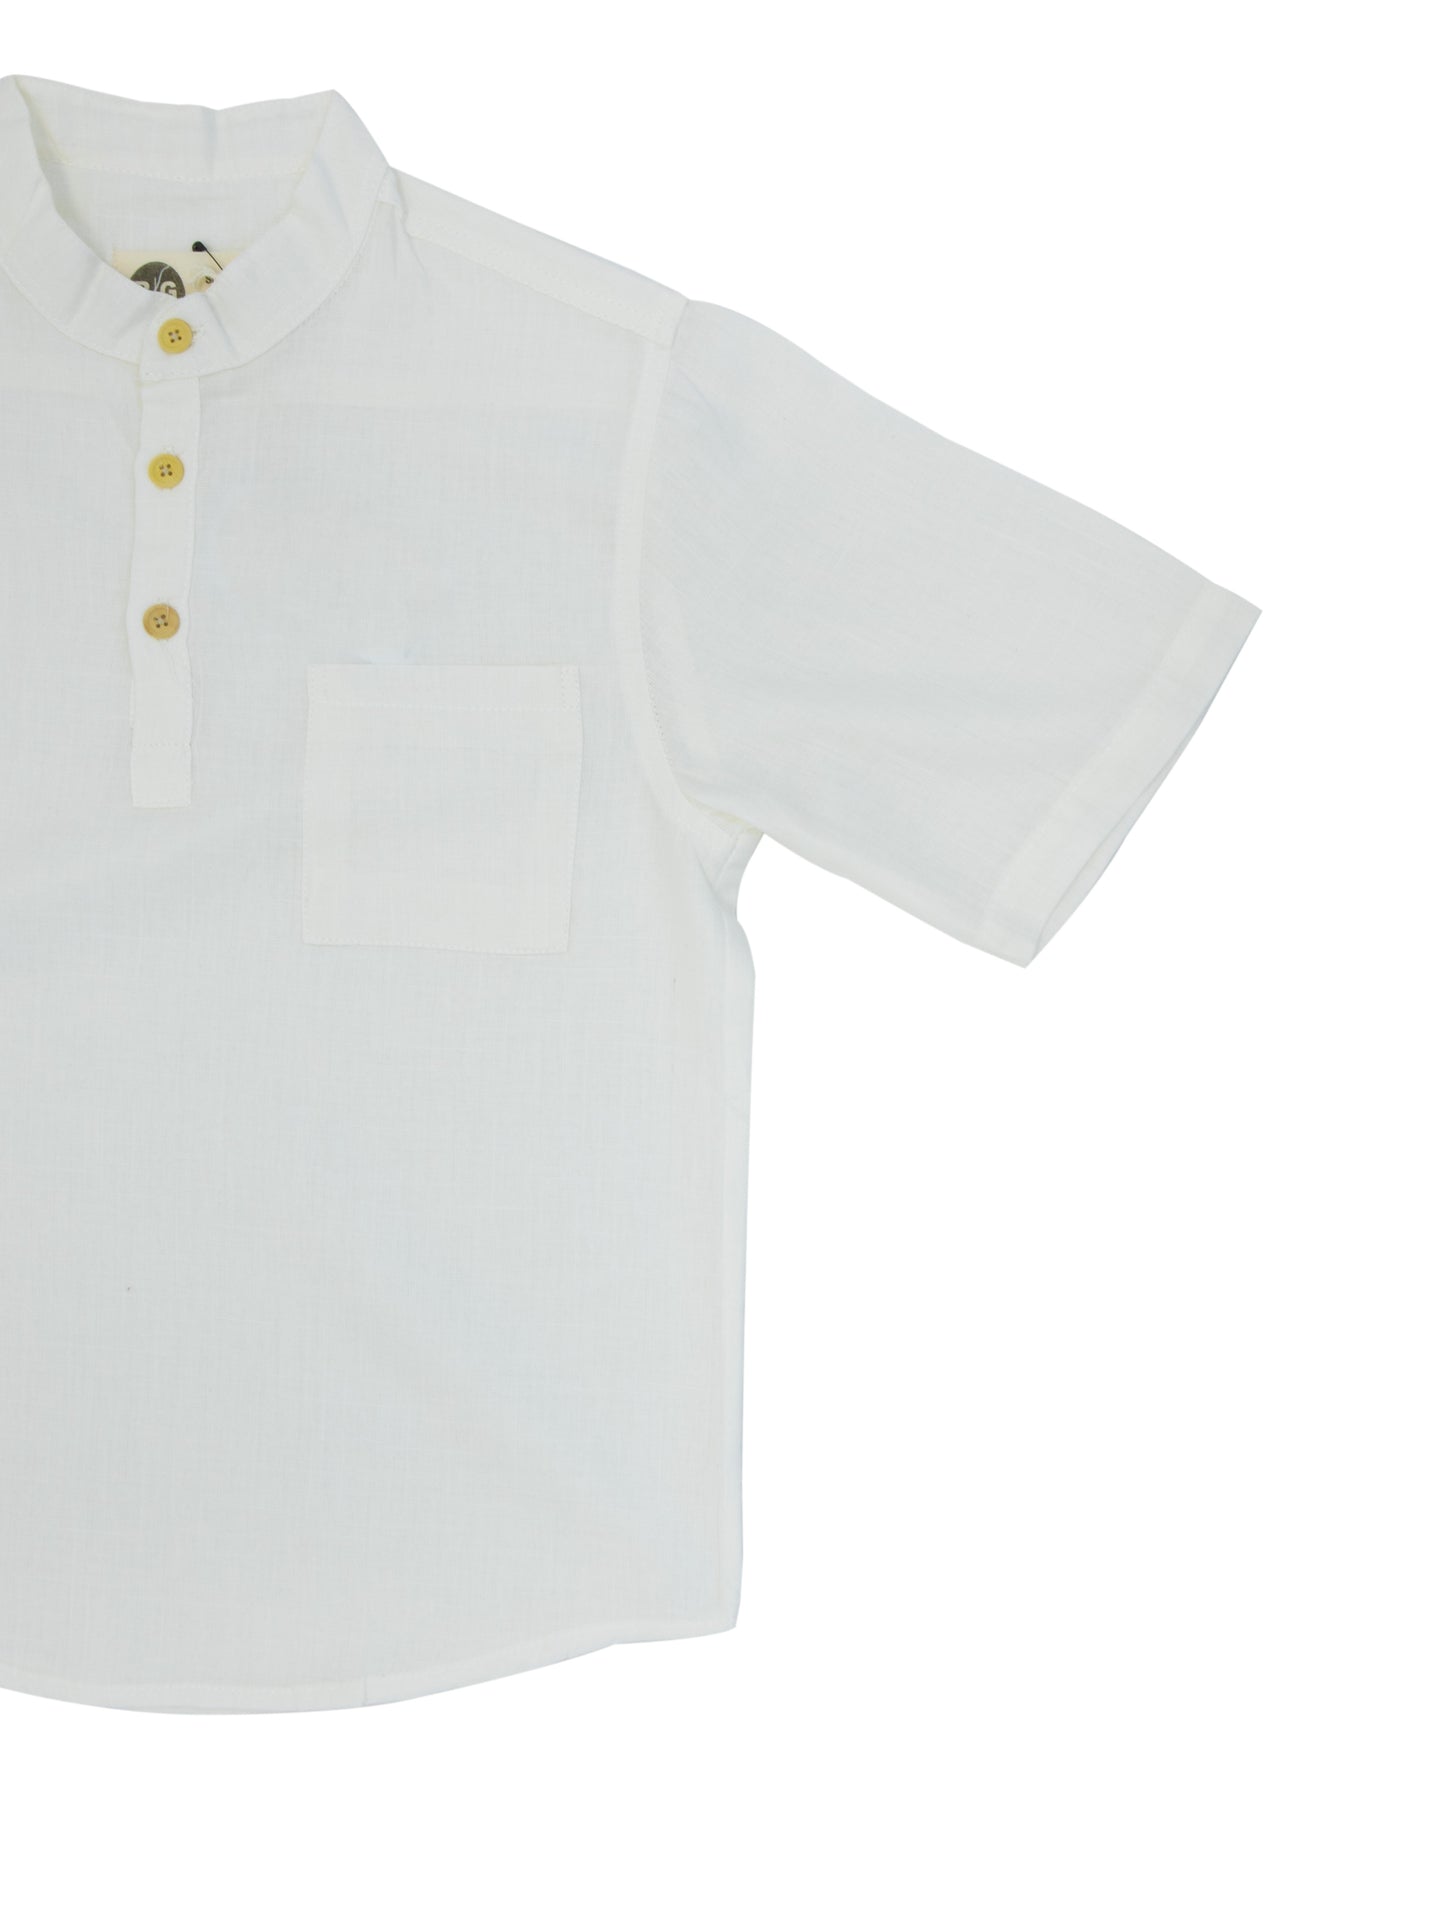 Детская летняя рубашка с воротником из 100% льняной ткани